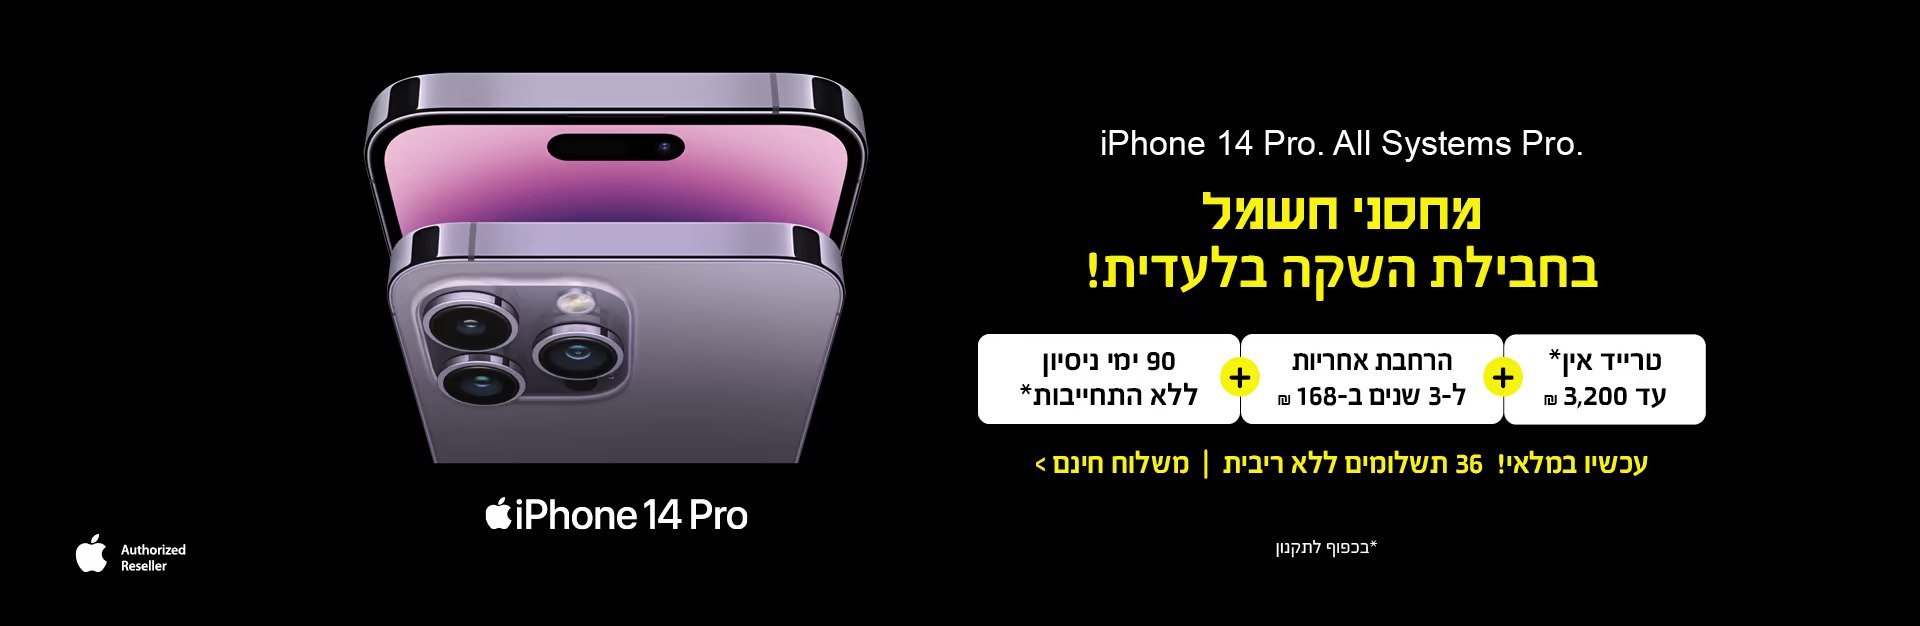 השקת Apple iPhone 14 Pro